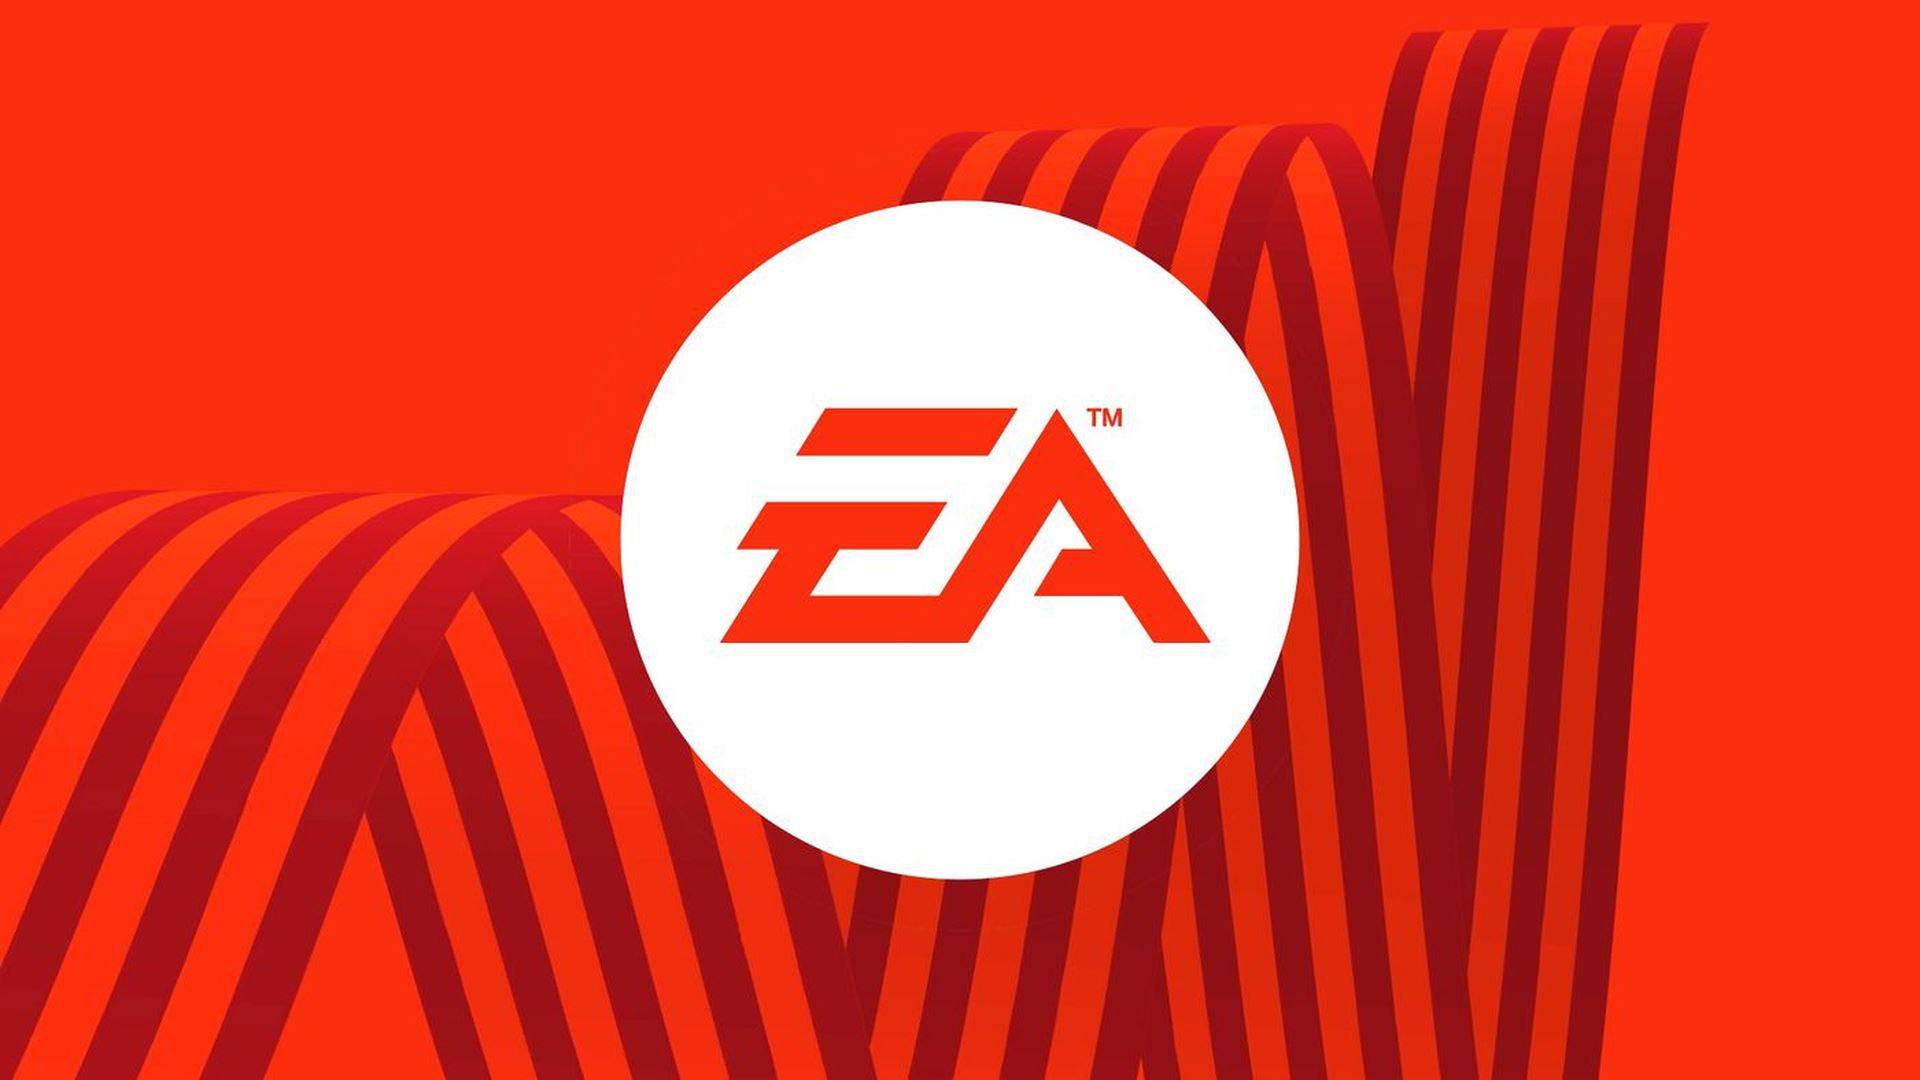 Changements chez Electronic Arts (EA) : Une restructuration majeure